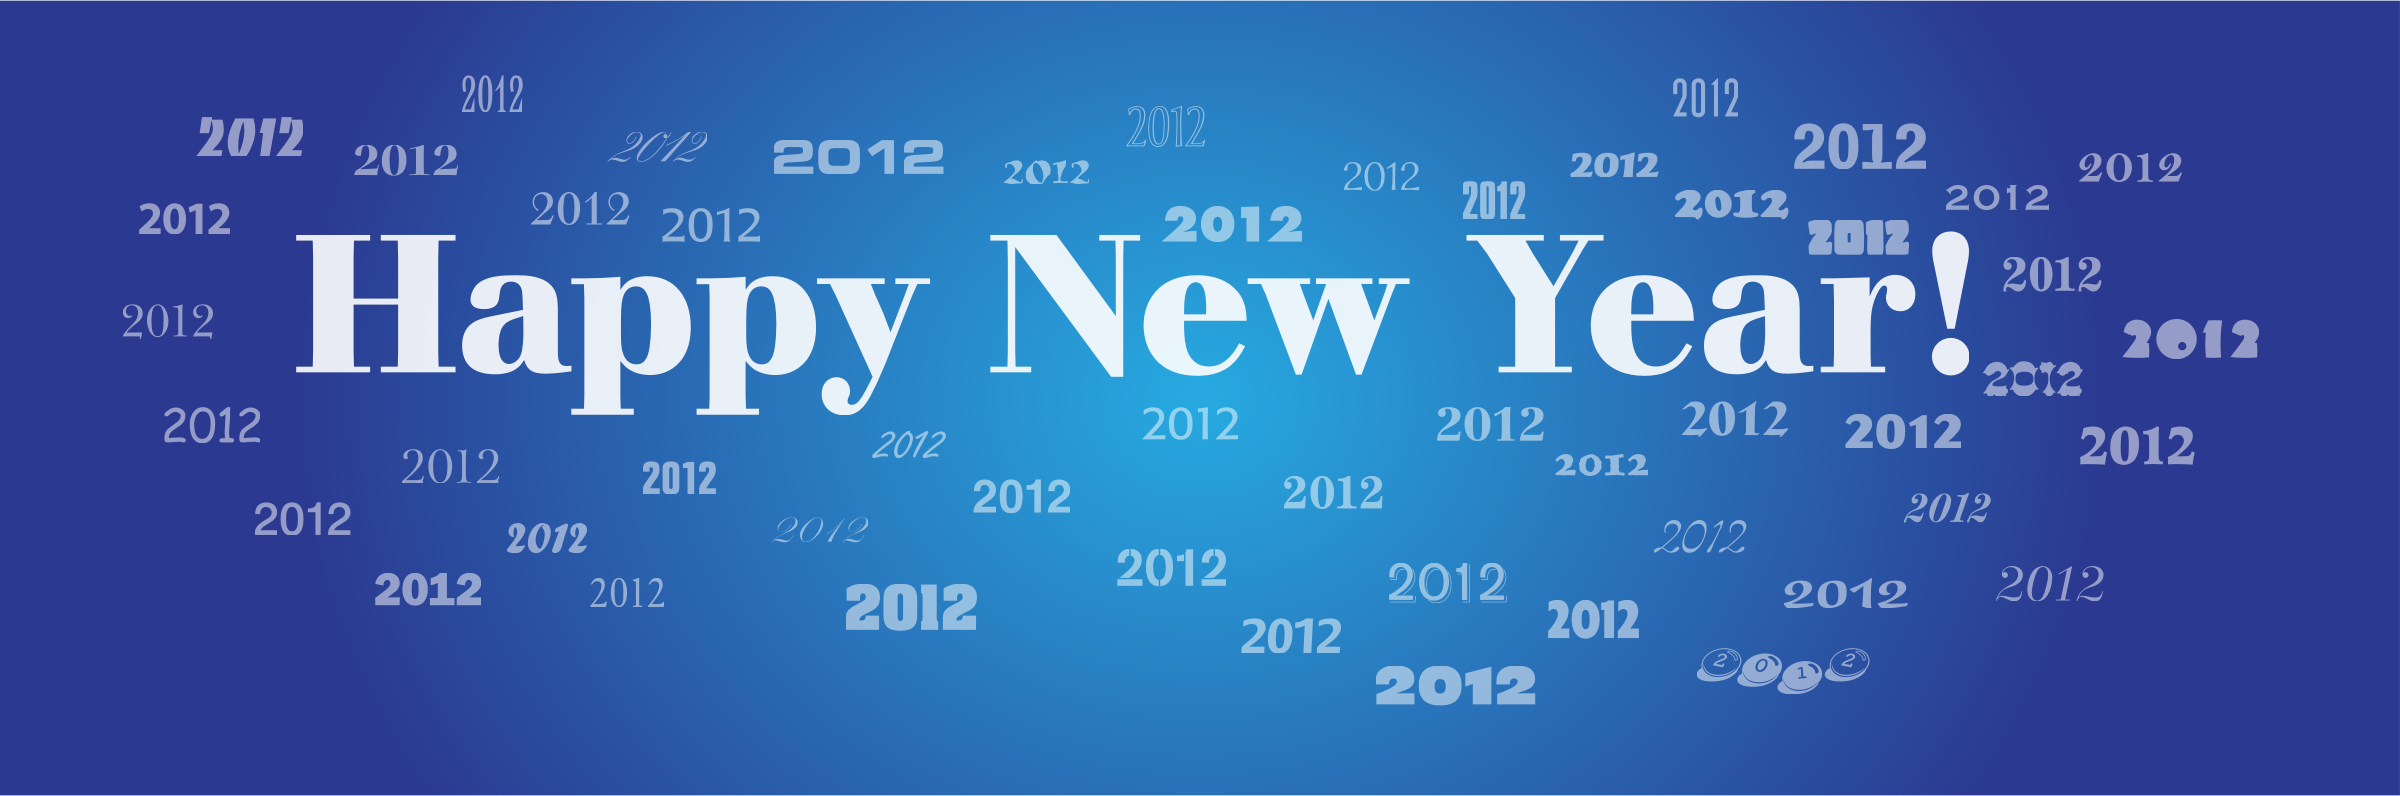 Happy New Year 2012 Clip arts